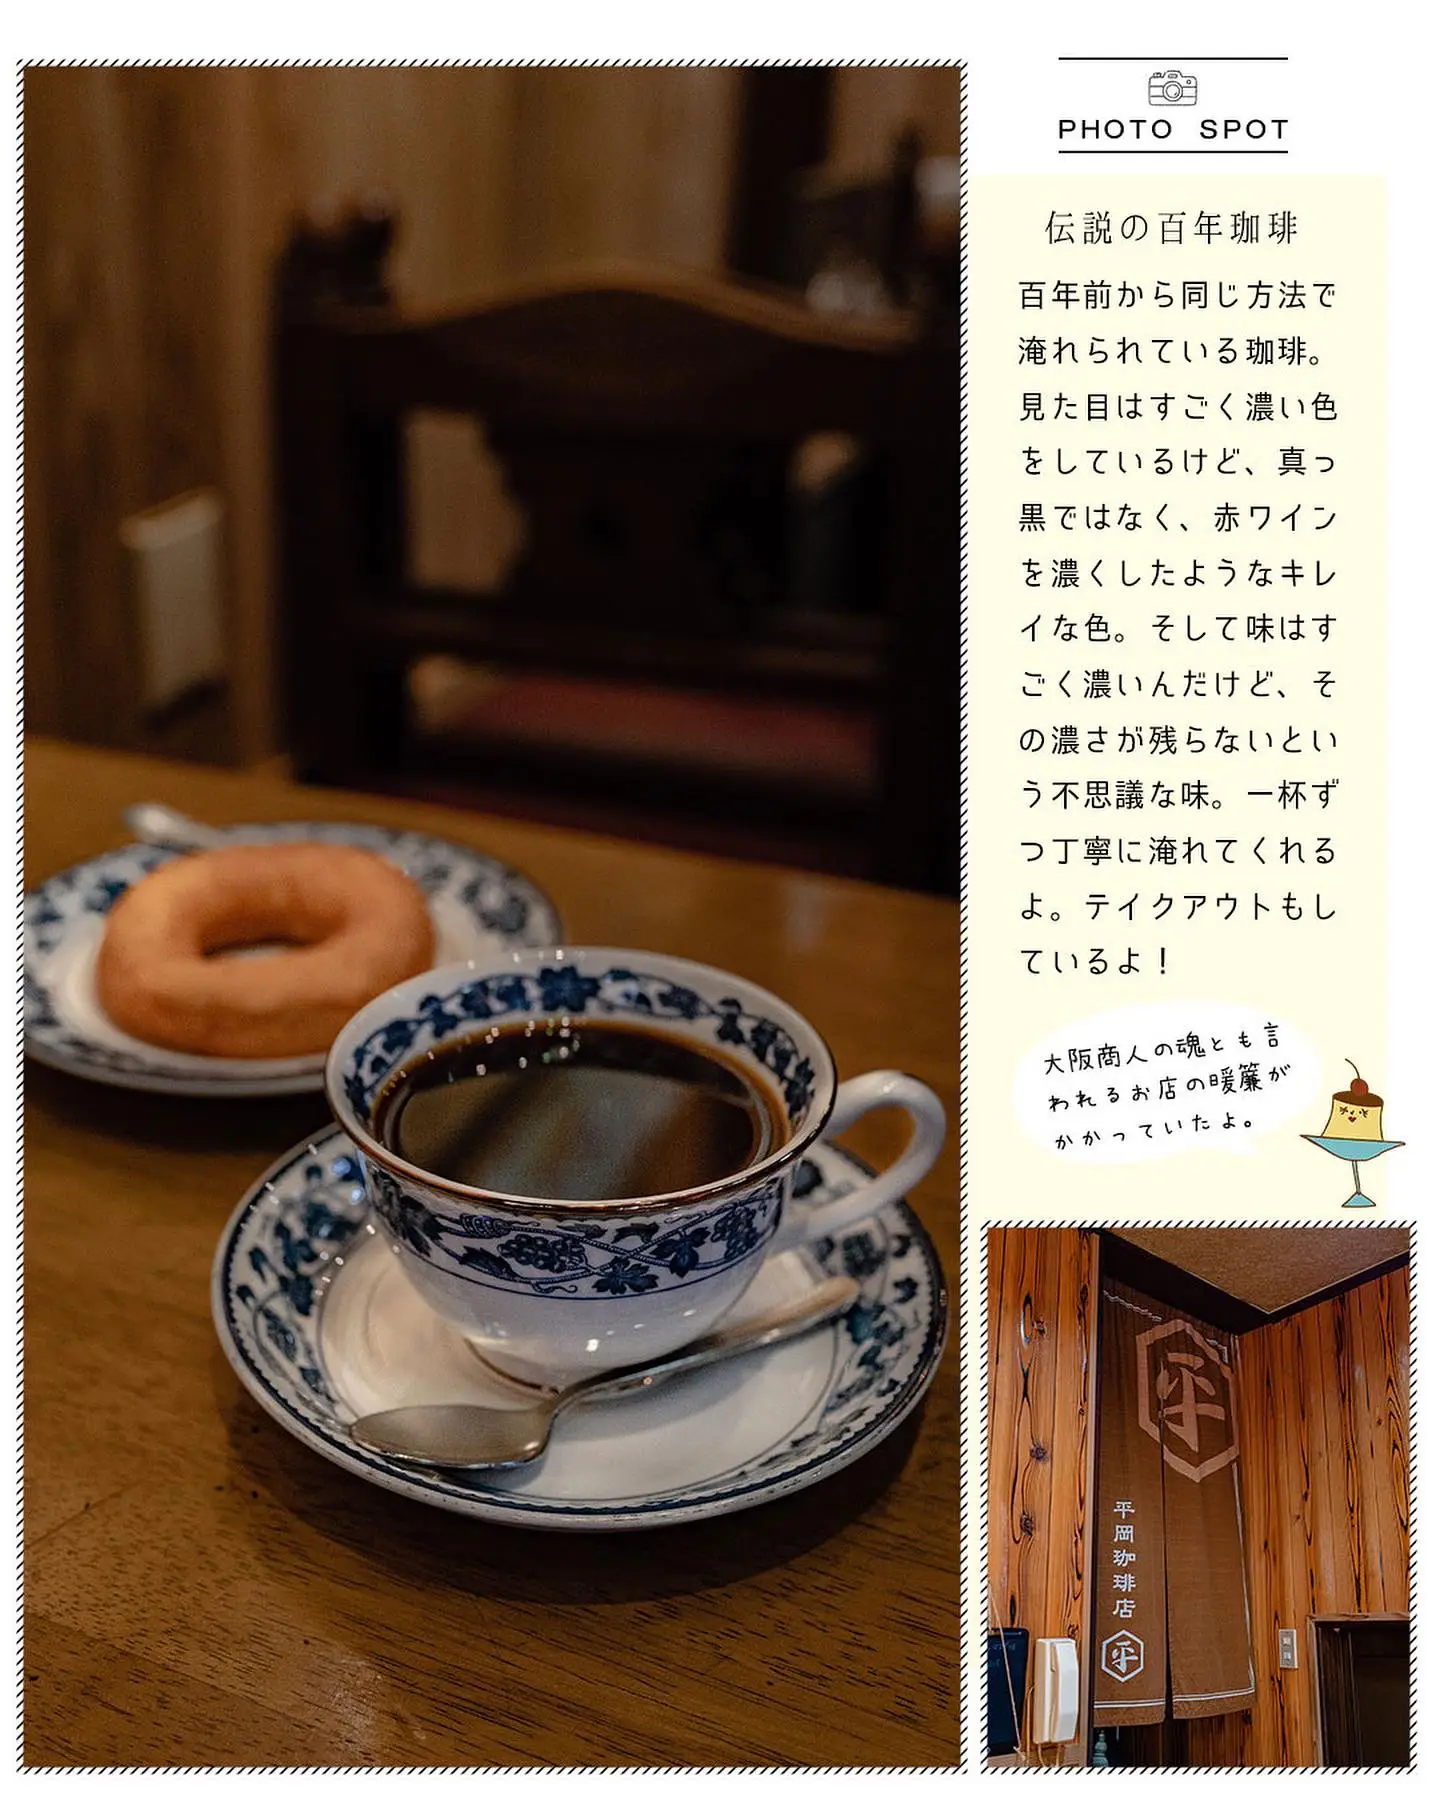 人気の売れ筋 〓〓(コーヒー)の旅―吉祥寺・〓〓店「もか」 | tonky.jp